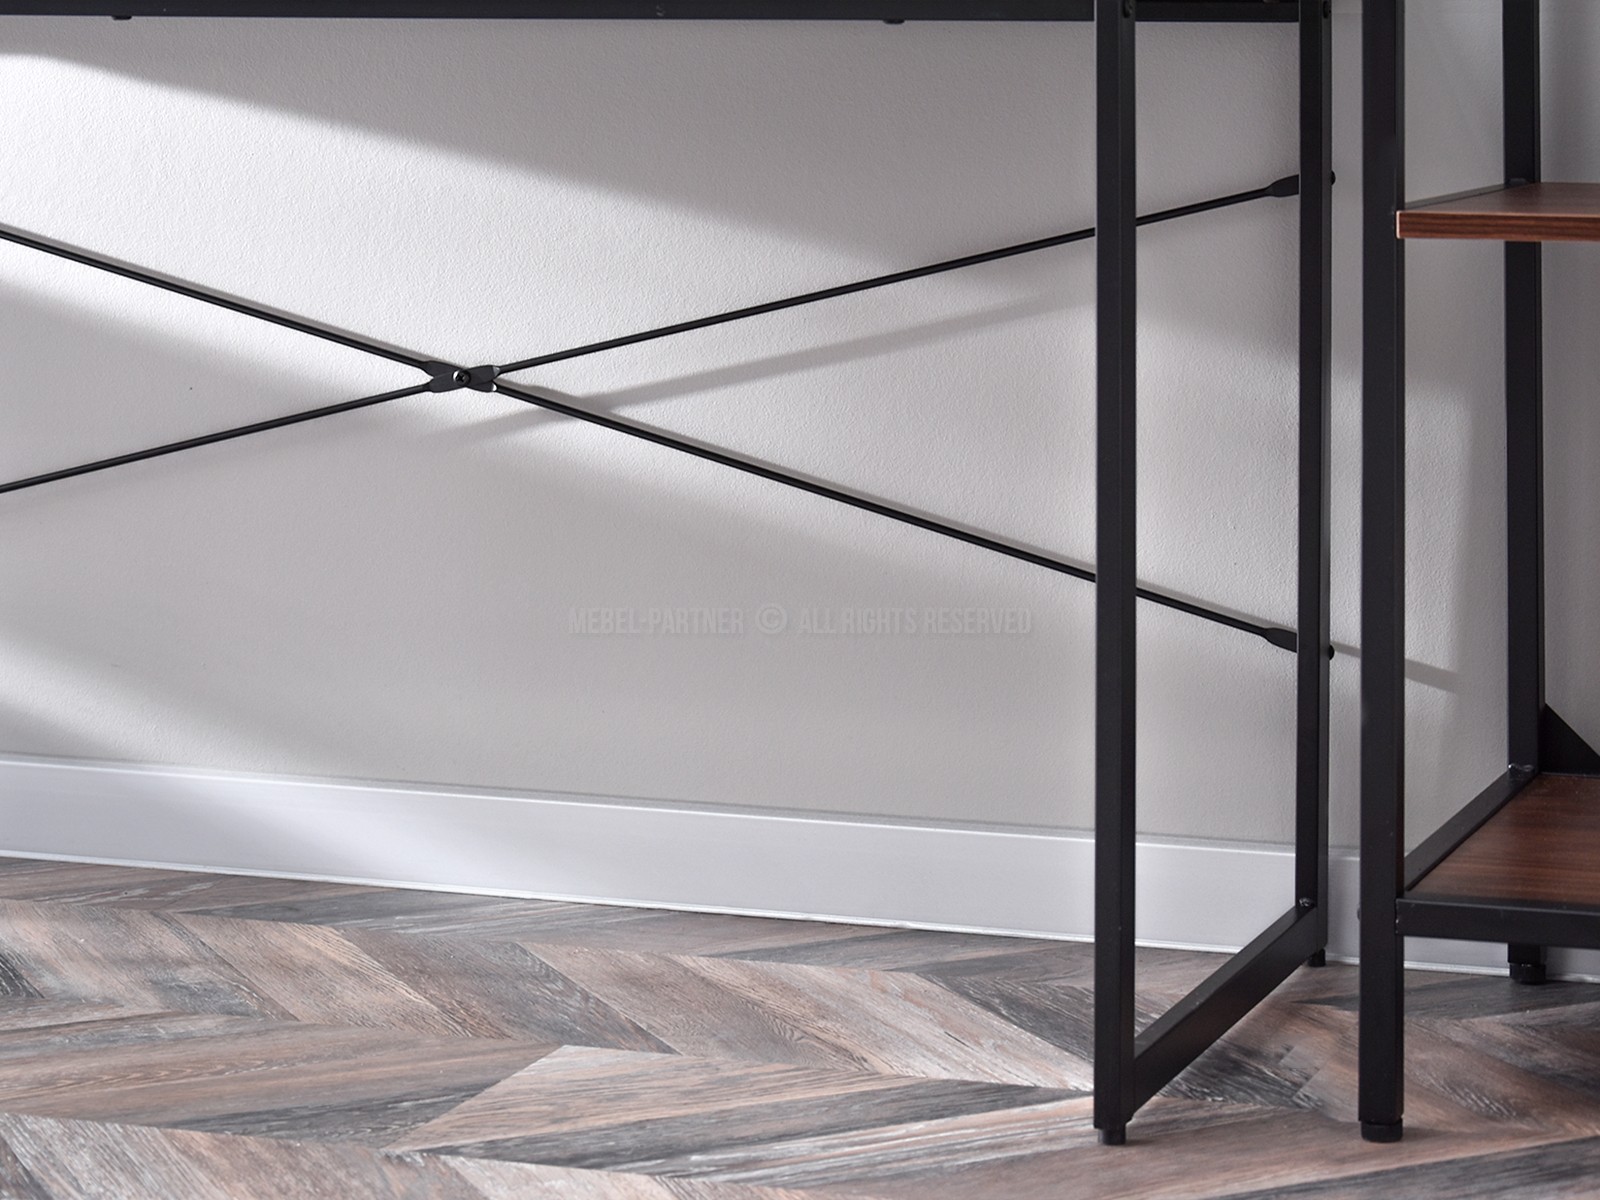 Duże industrialne biurko NILS ORZECH na czarnych płozach - stylowe wykończenie